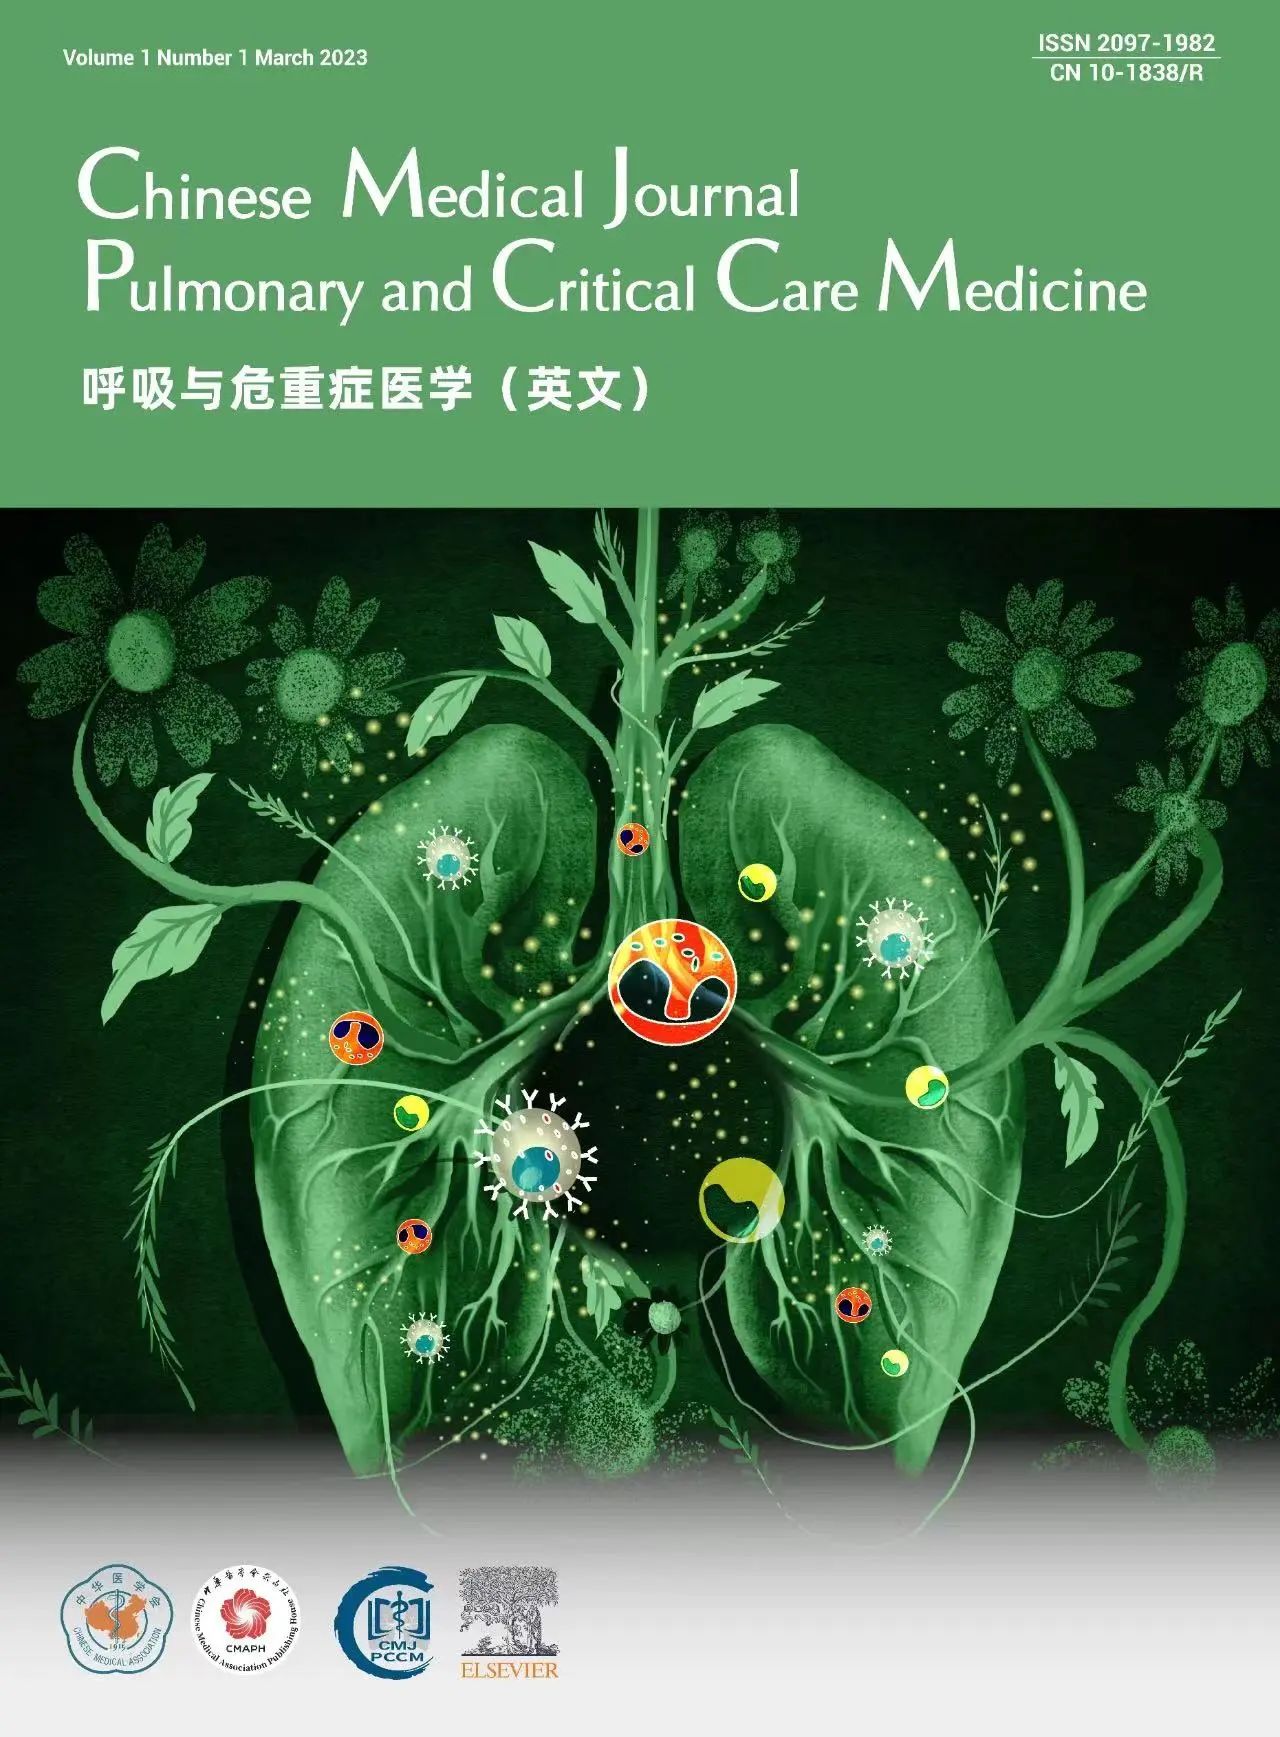 中华医学杂志呼吸与危重症医学》（CMJ-PCCM）上线啦！-呼吸界